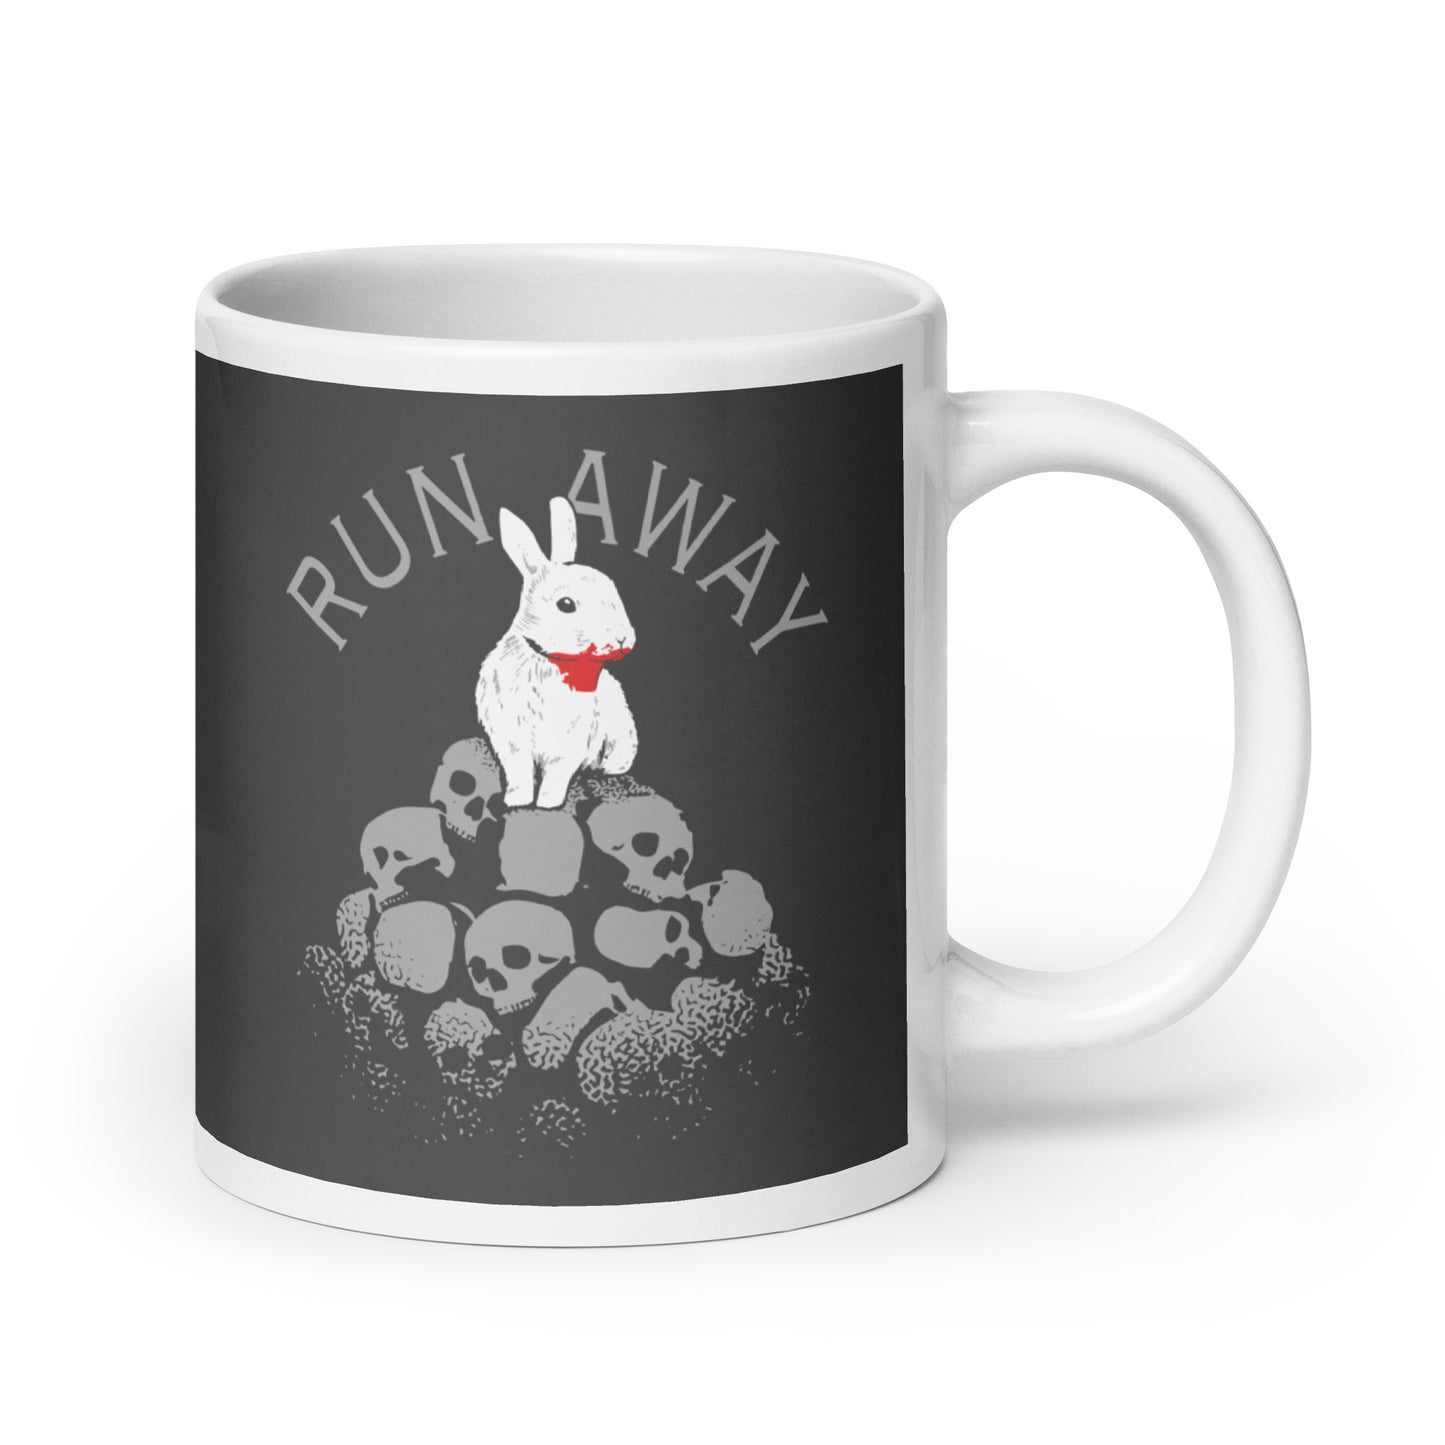 Run Away Mug